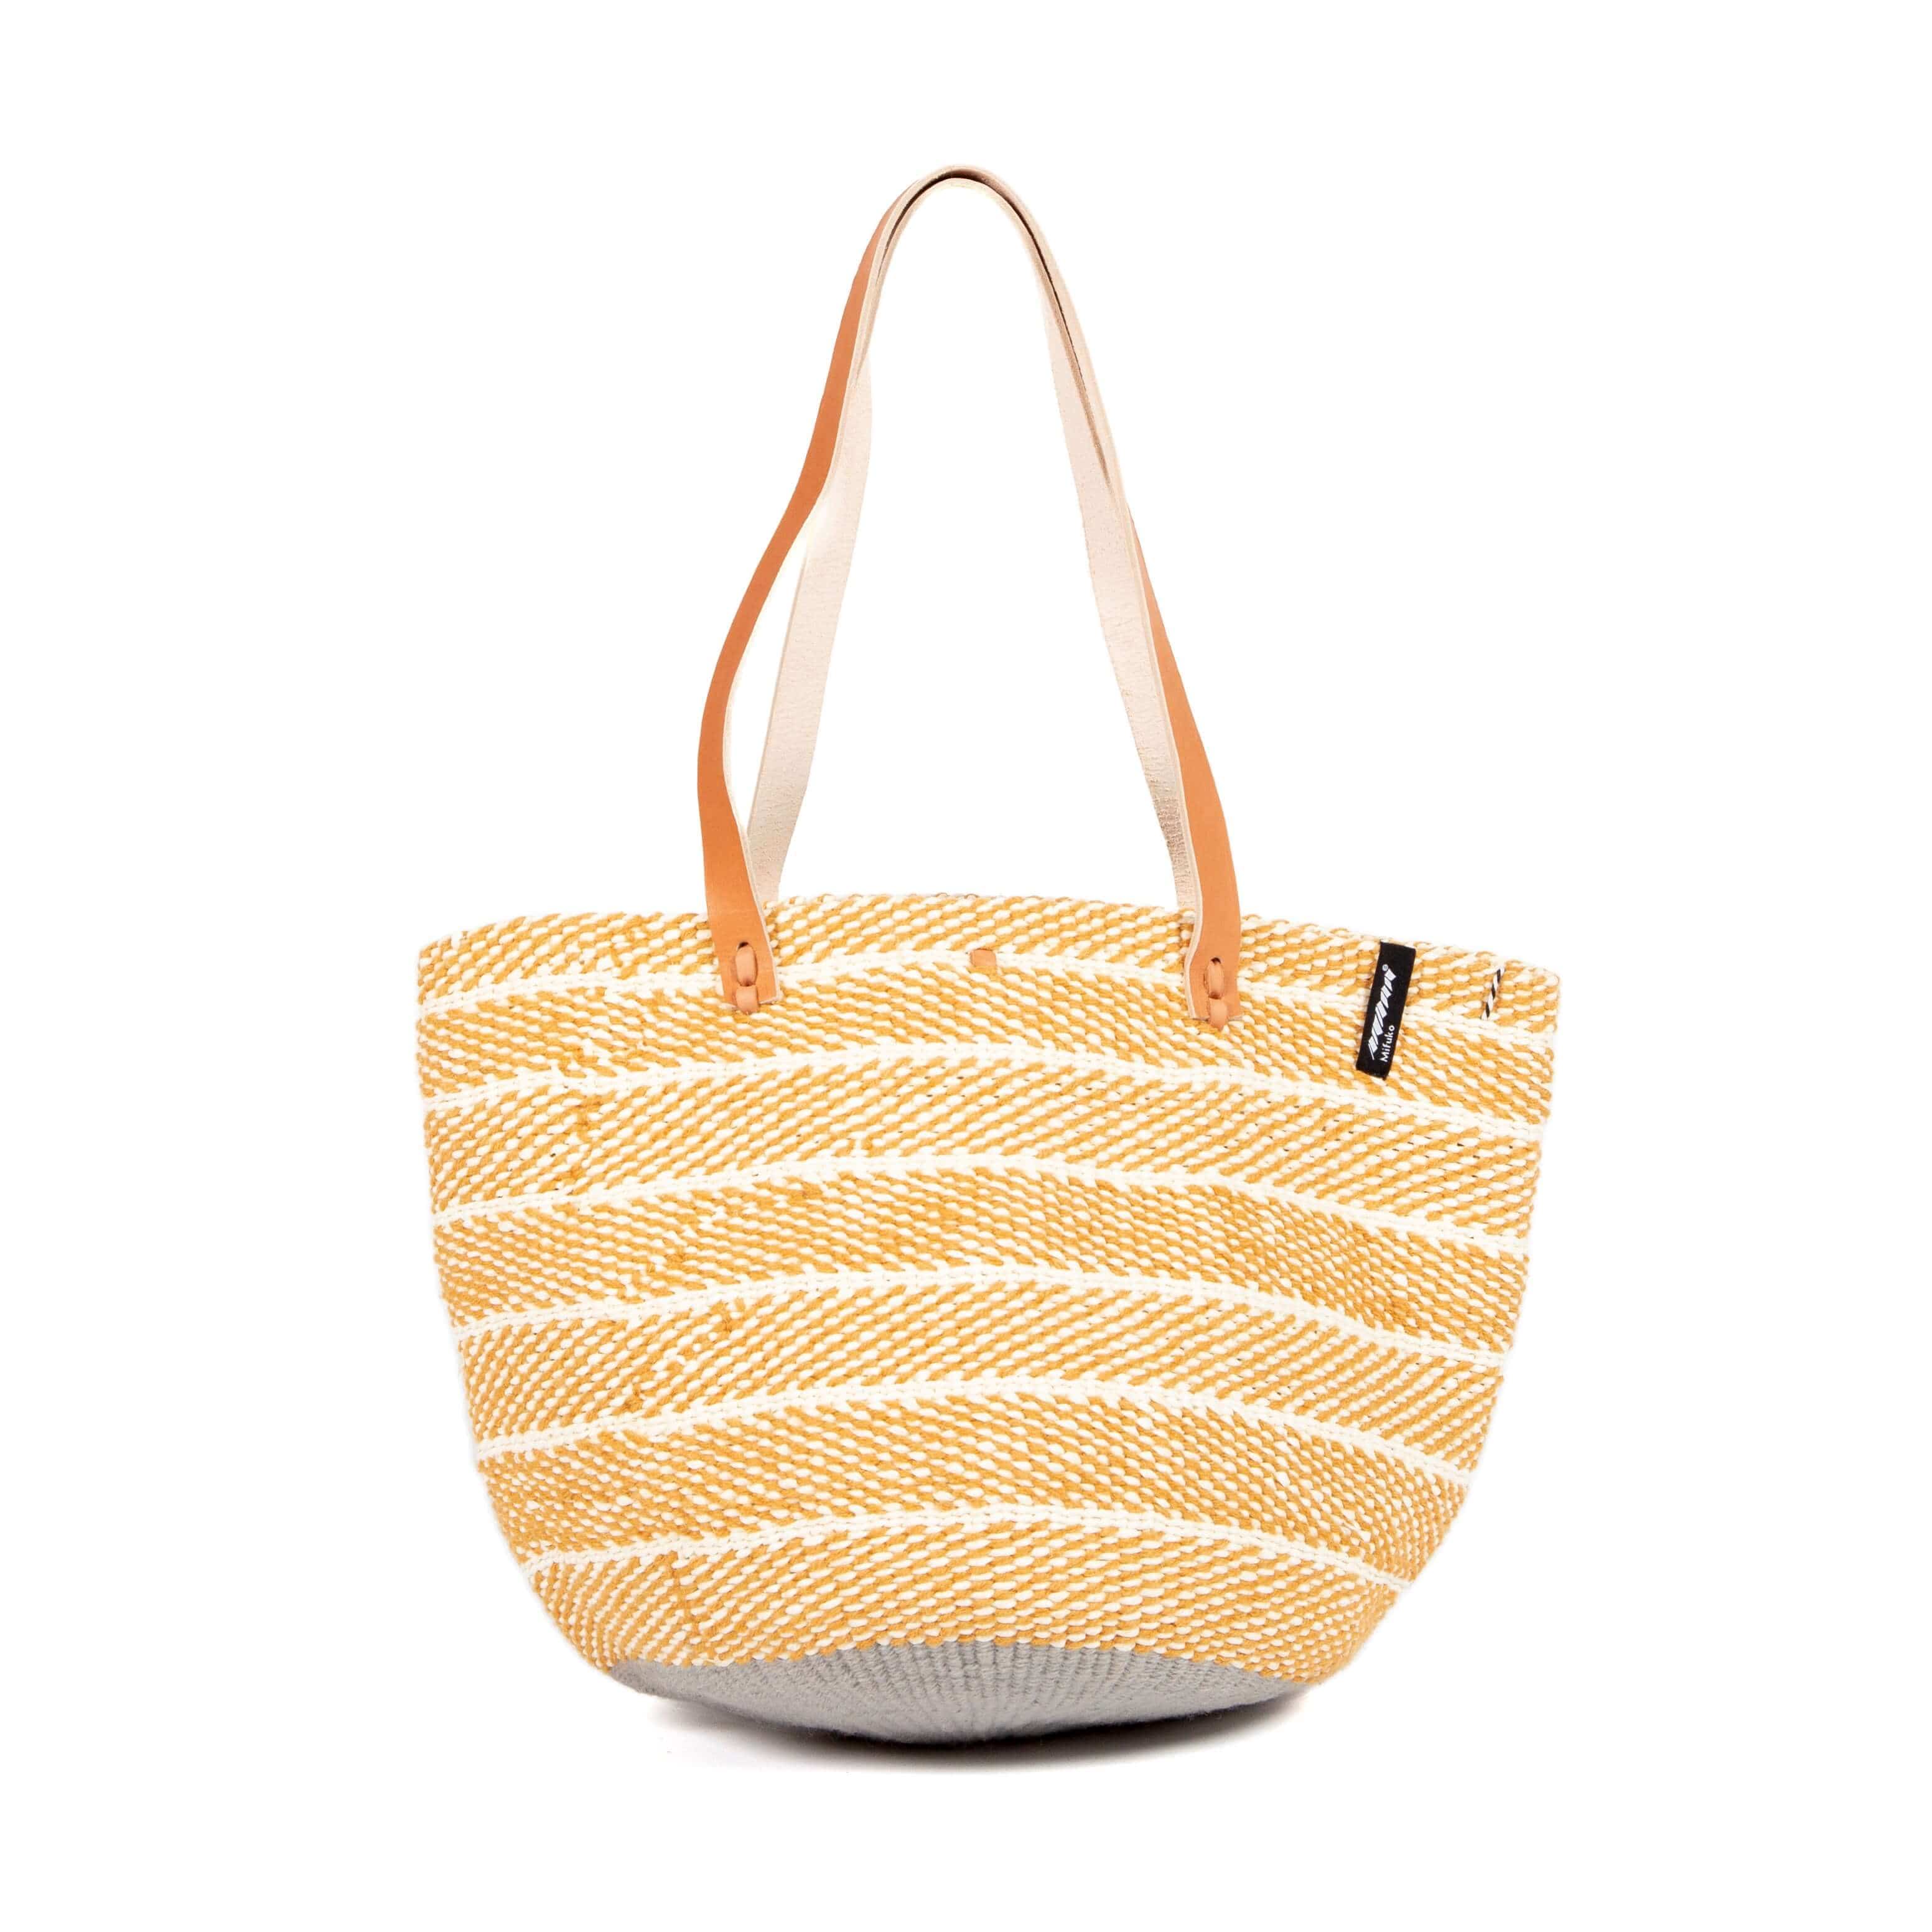 Mifuko Wool and paper Shopper basket Pamba shopper basket | Ochre twill weave M